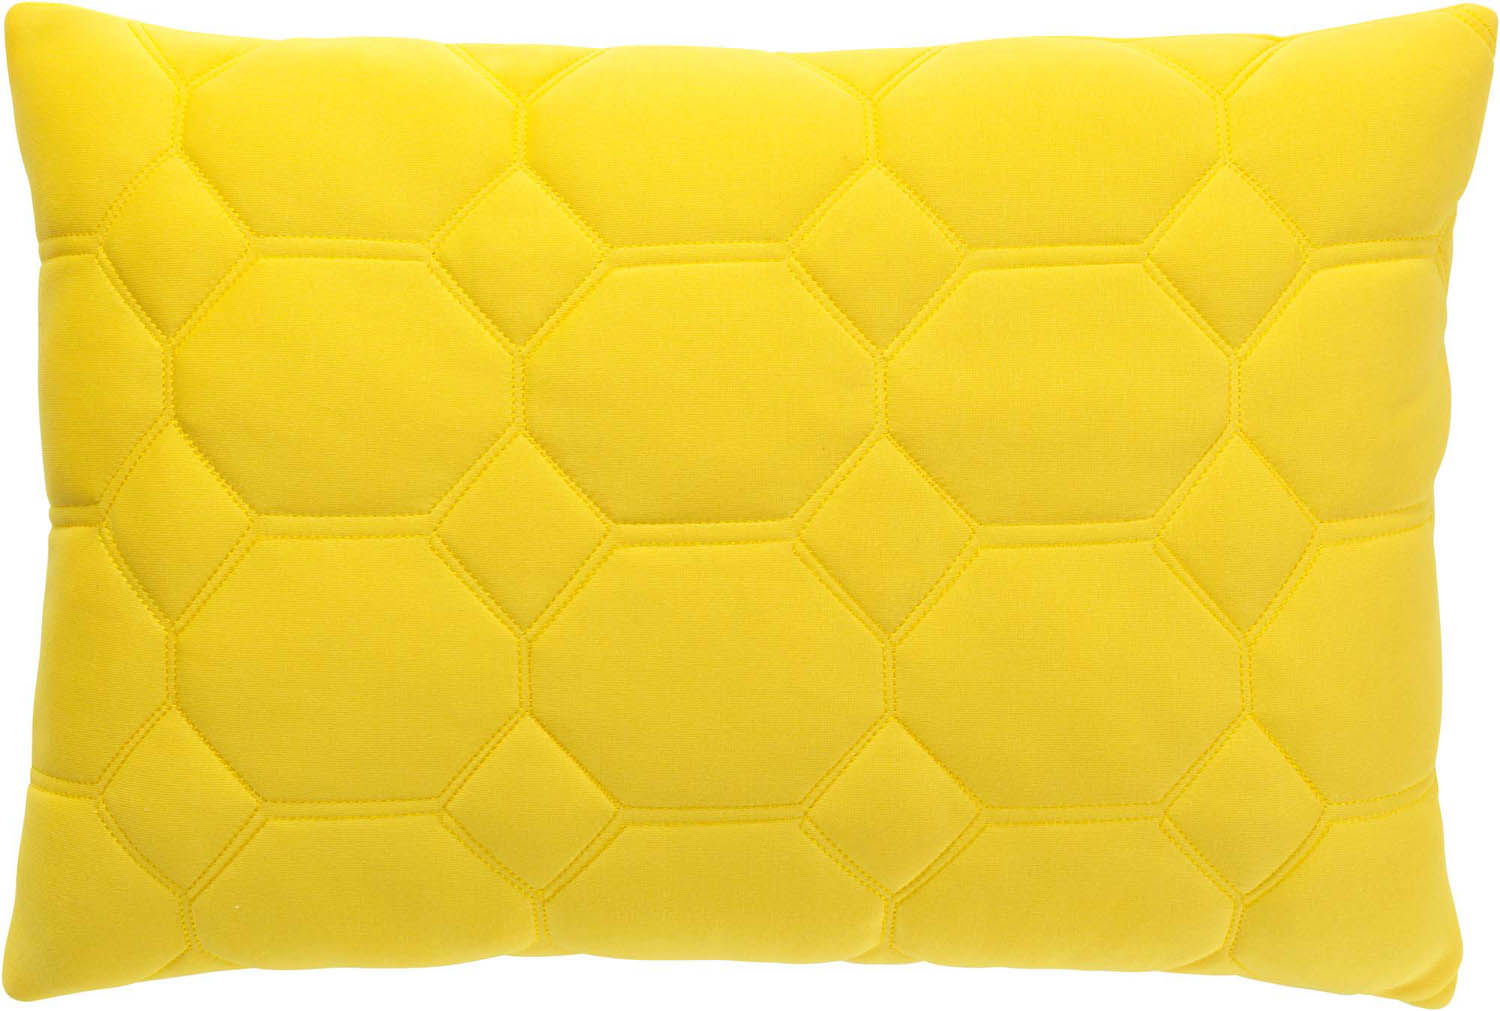 LUNA LEMON - Sierkussen lemon 40x60 cm - geel